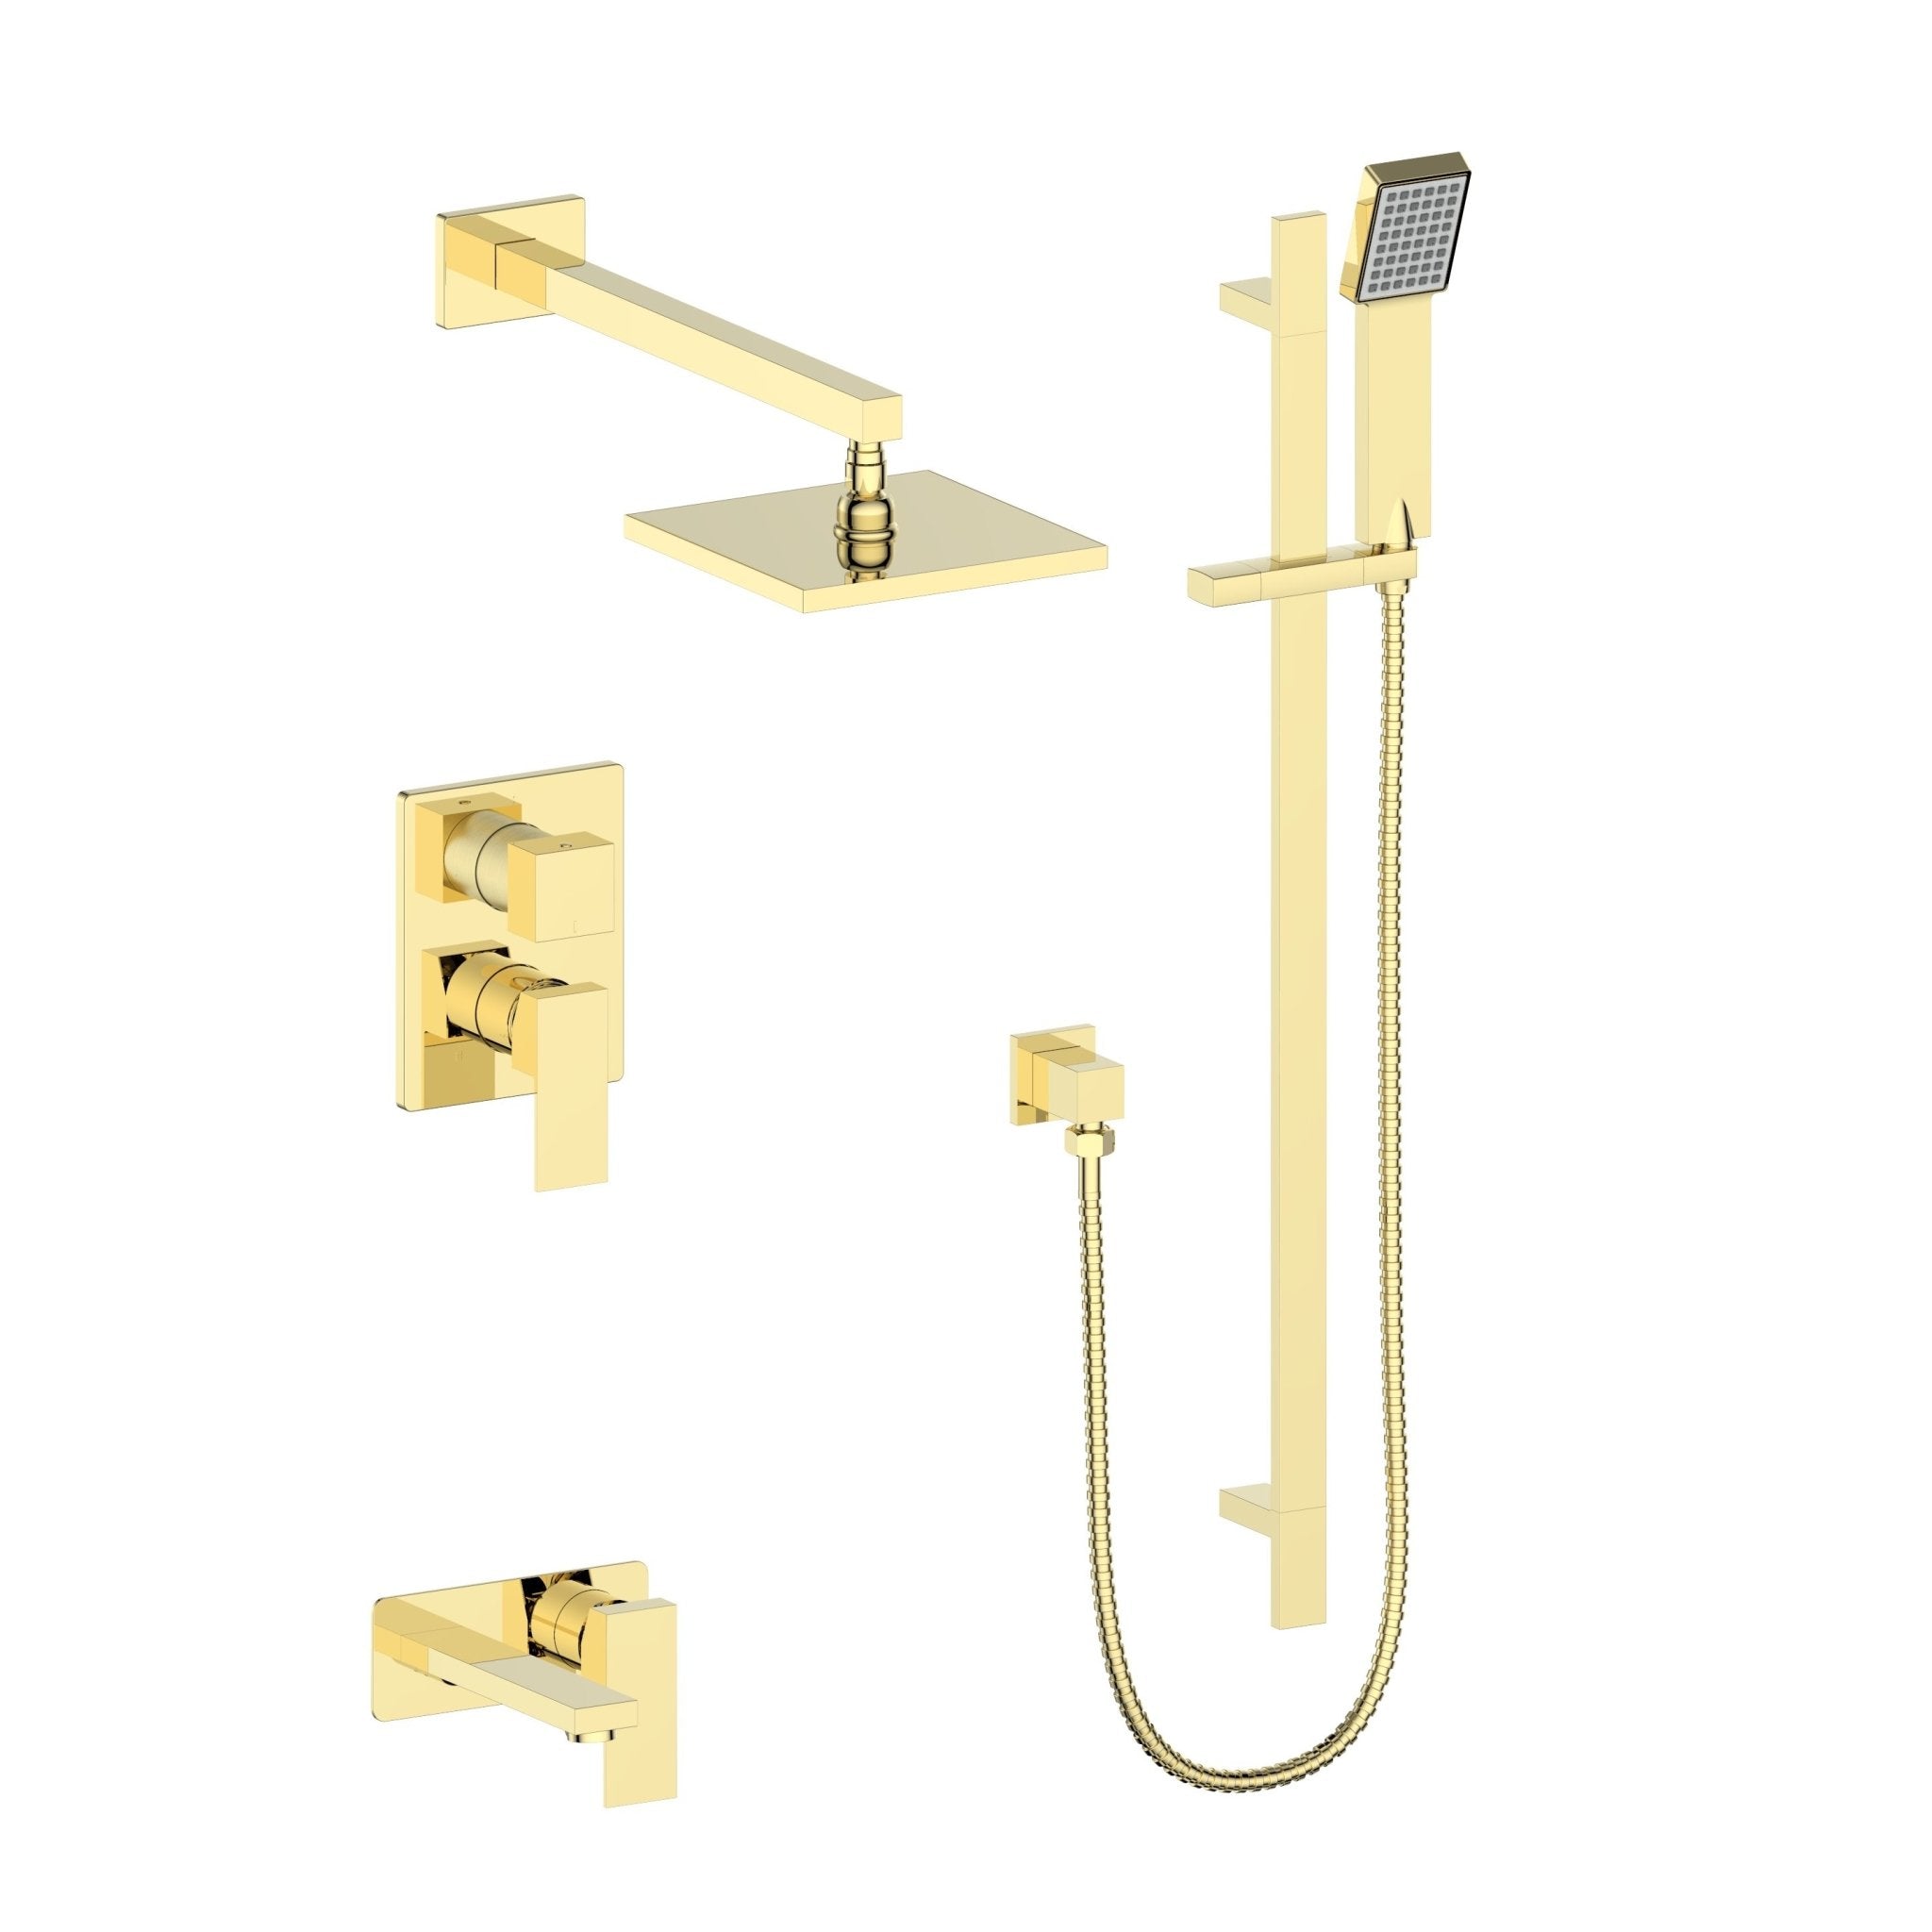 ZLINE Bliss Shower System (BLS-SHS) in polished gold